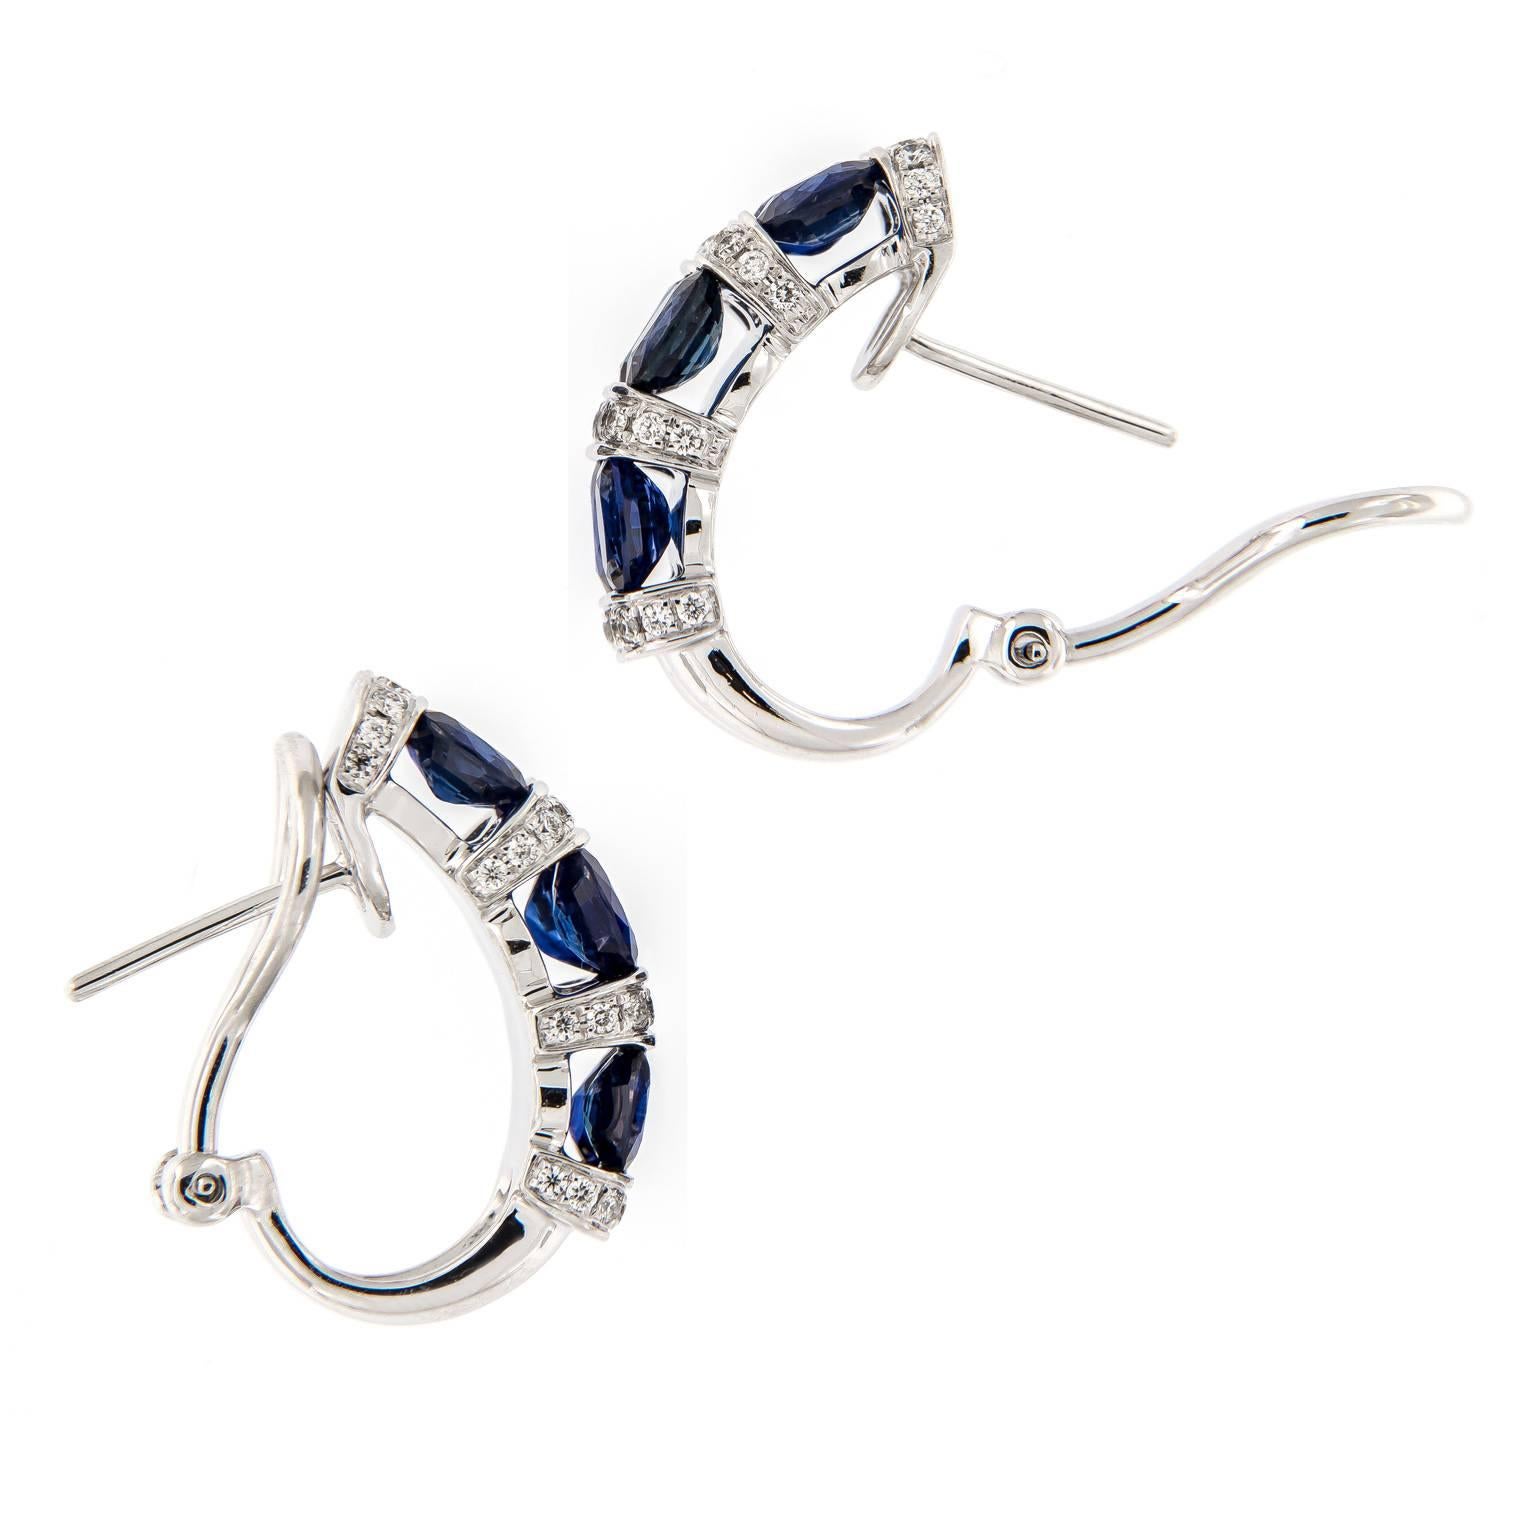 Elegante Reihen aus saftig blauen, ovalen Saphiren und gepflasterten, weißen Diamanten sorgen für ein wunderschönes Aussehen. Die Ohrringe sind aus feinem 18-karätigem Weißgold gefertigt und haben Ohrstecker mit Omega-Clipverschluss für sicheren